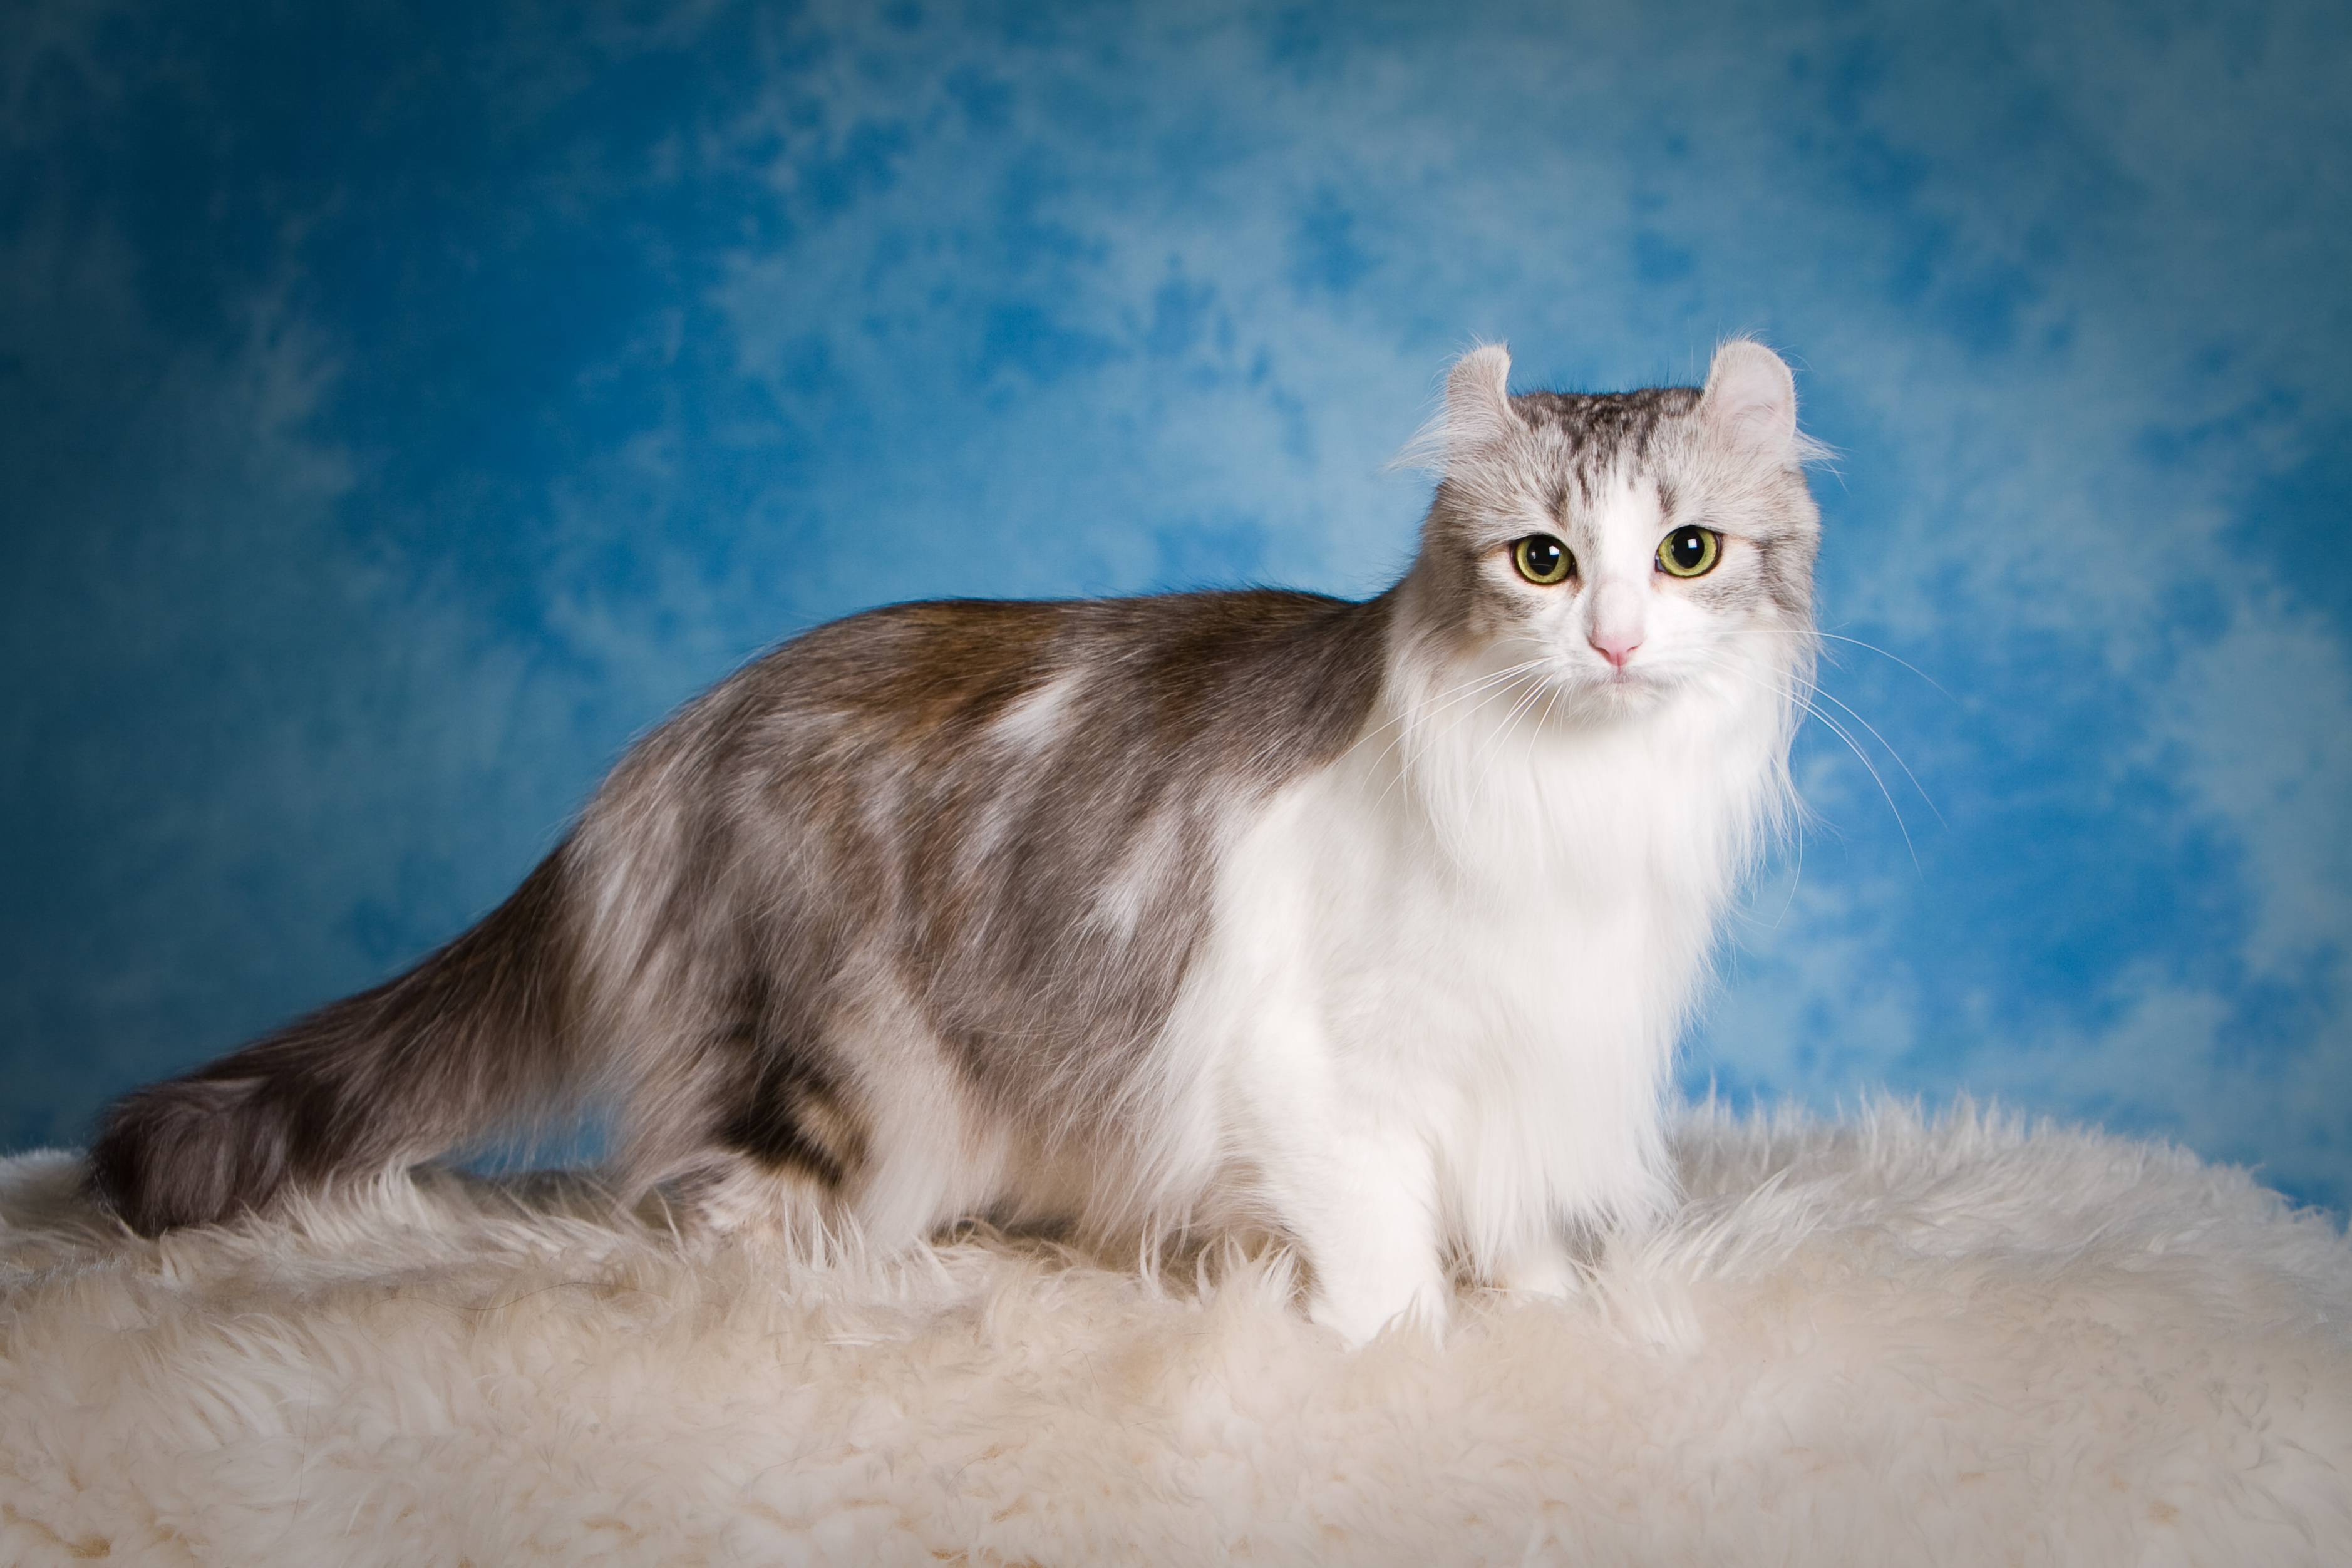 Американский керл: все о кошке, фото, описание породы, характер, цена